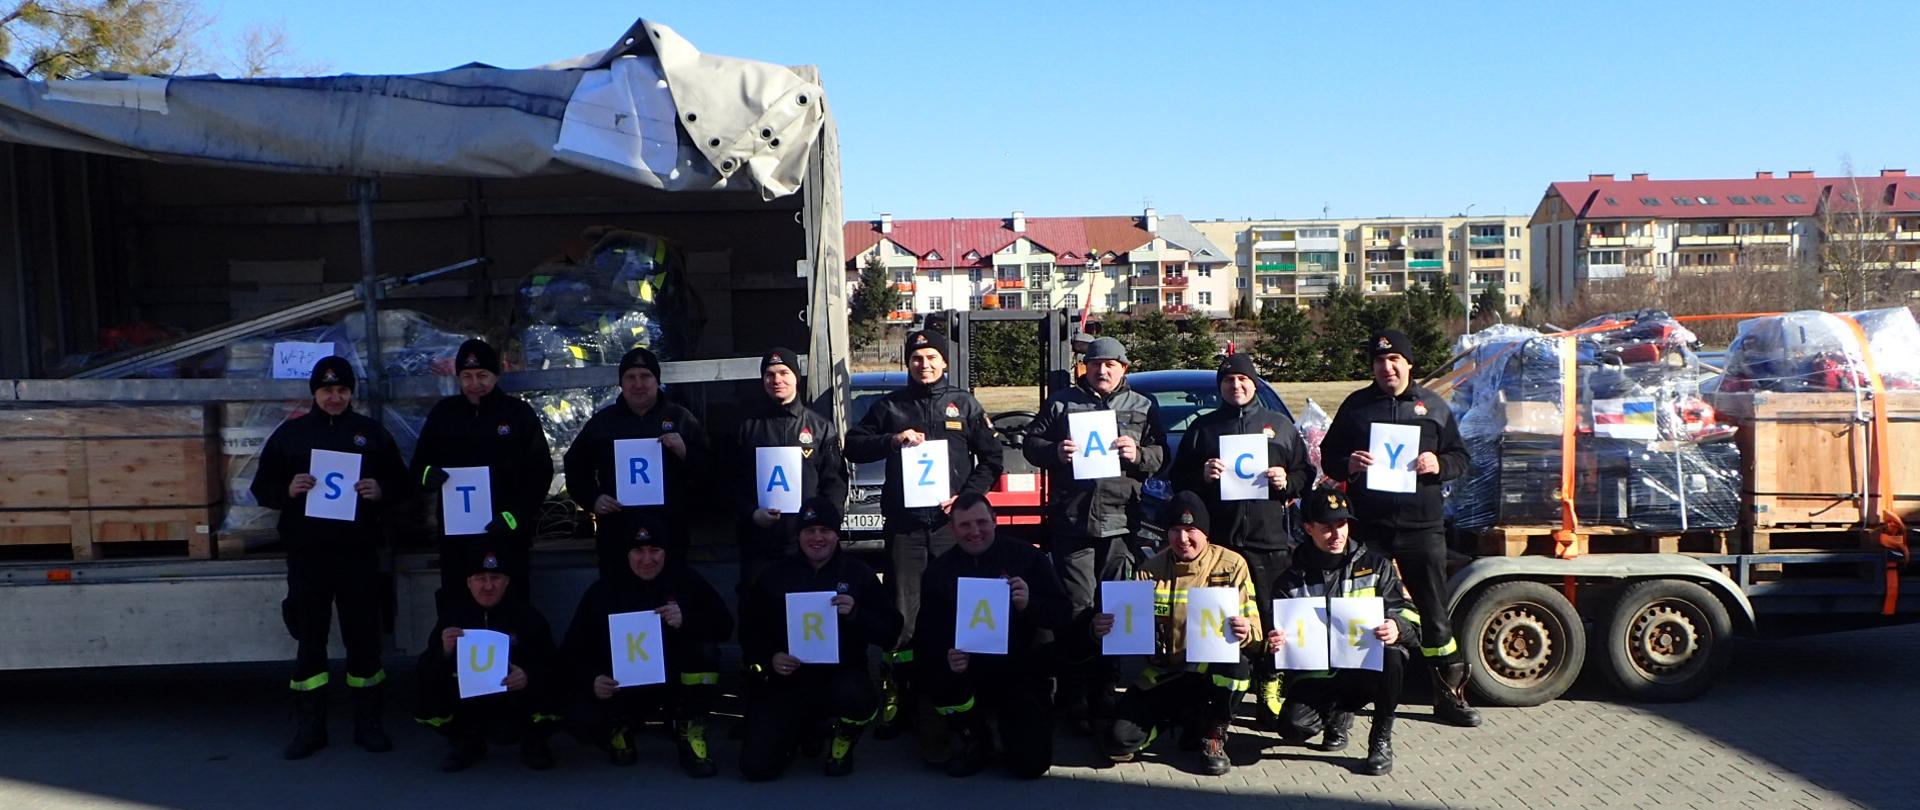 Grupa strażaków stoi z napisem "Strażacy Ukrainie". W tle załadowany na samochody sprzęt pożarniczy. 